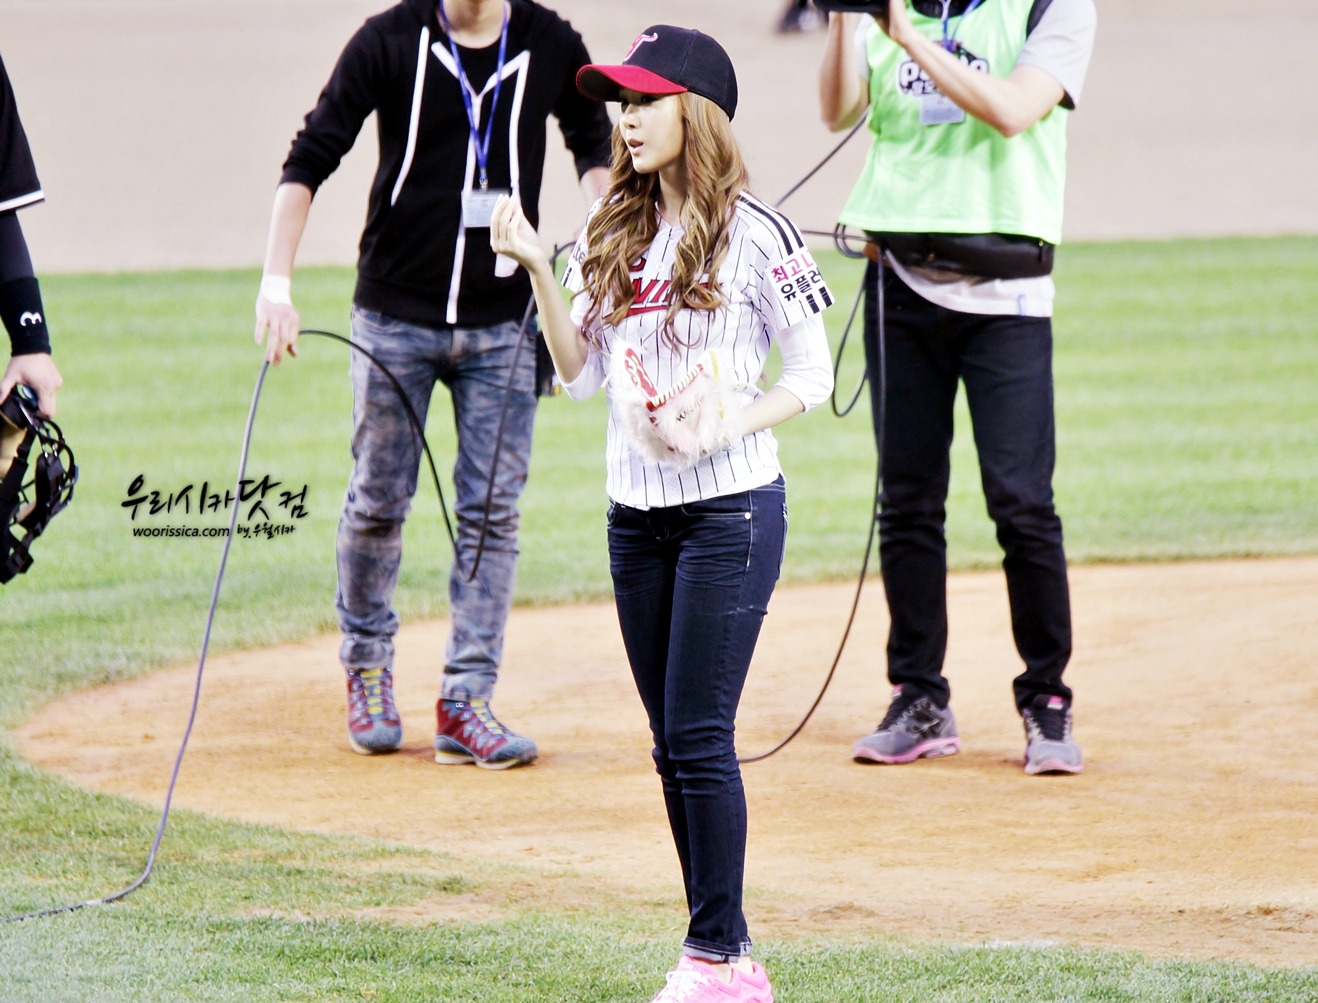 [PIC][11-05-2012]Jessica ném bóng mở màn cho trận đấu bóng chày giữa LG & Samsung chiều nay - Page 3 186E04494FAE63D21C9E6A